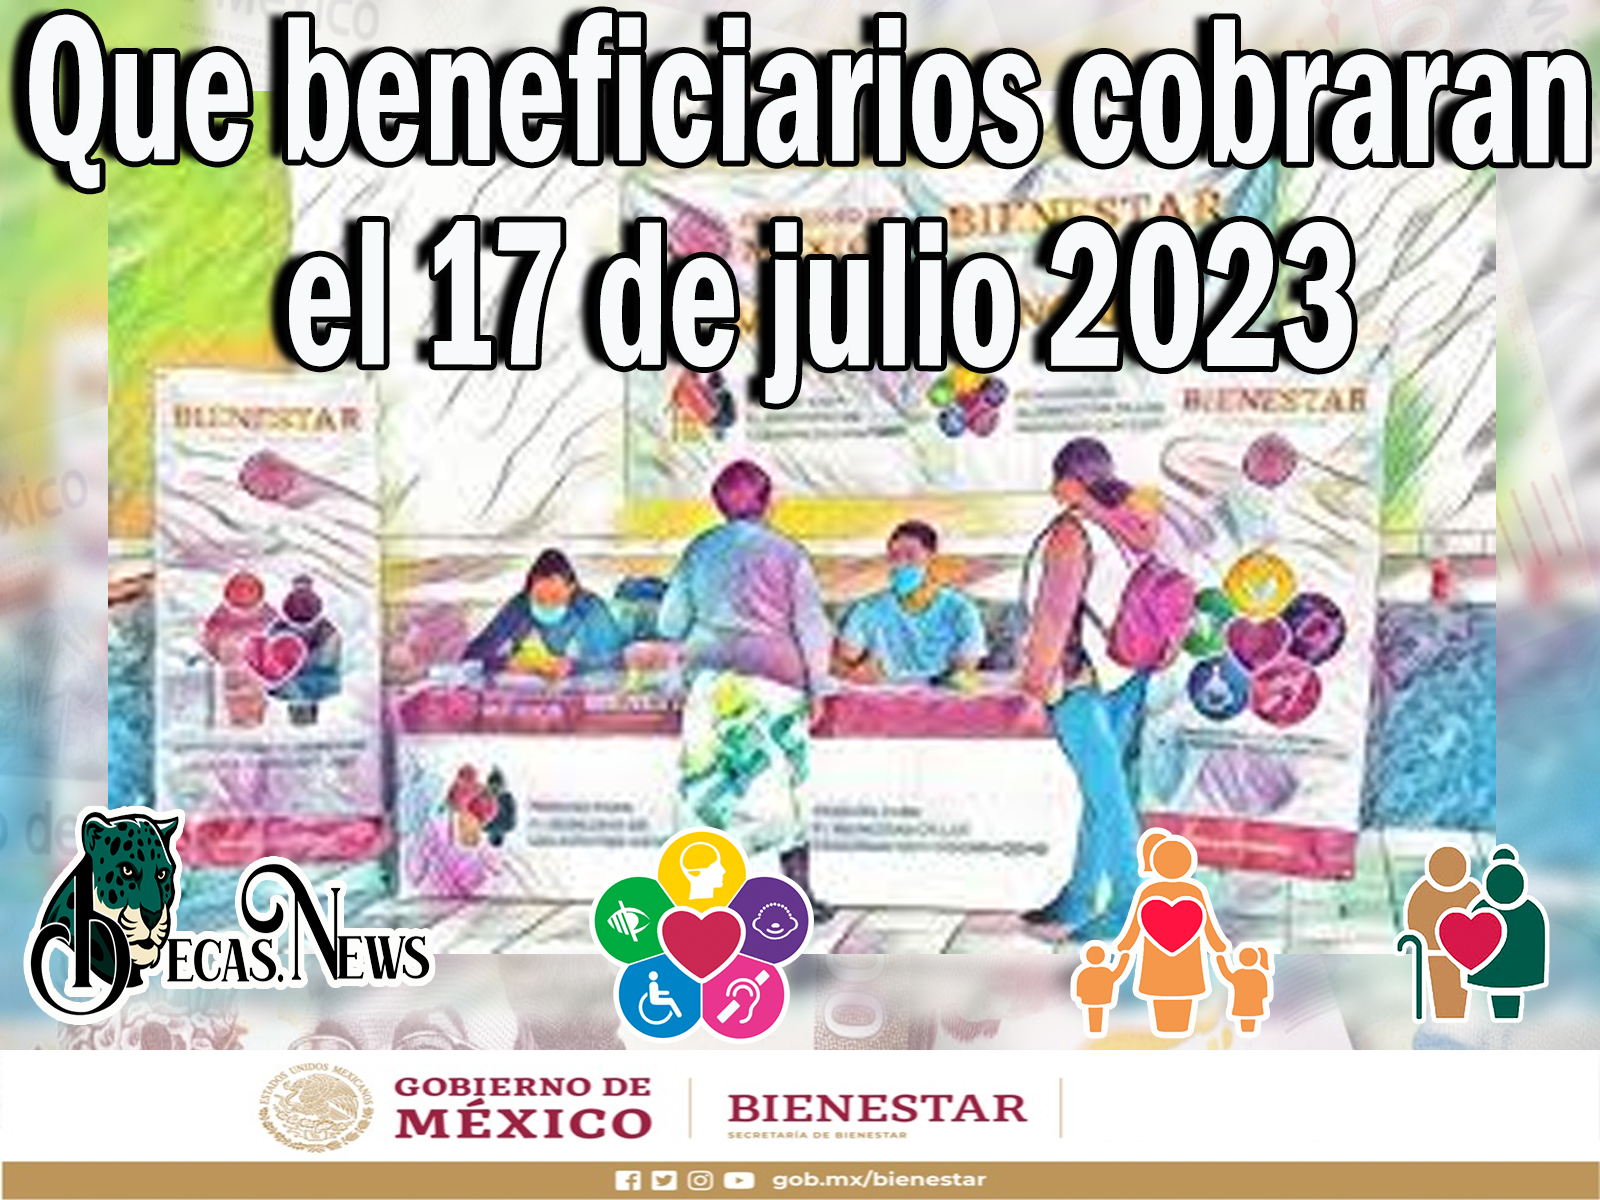 Programas del Bienestar: Que beneficiarios cobraran el 17 de julio 2023